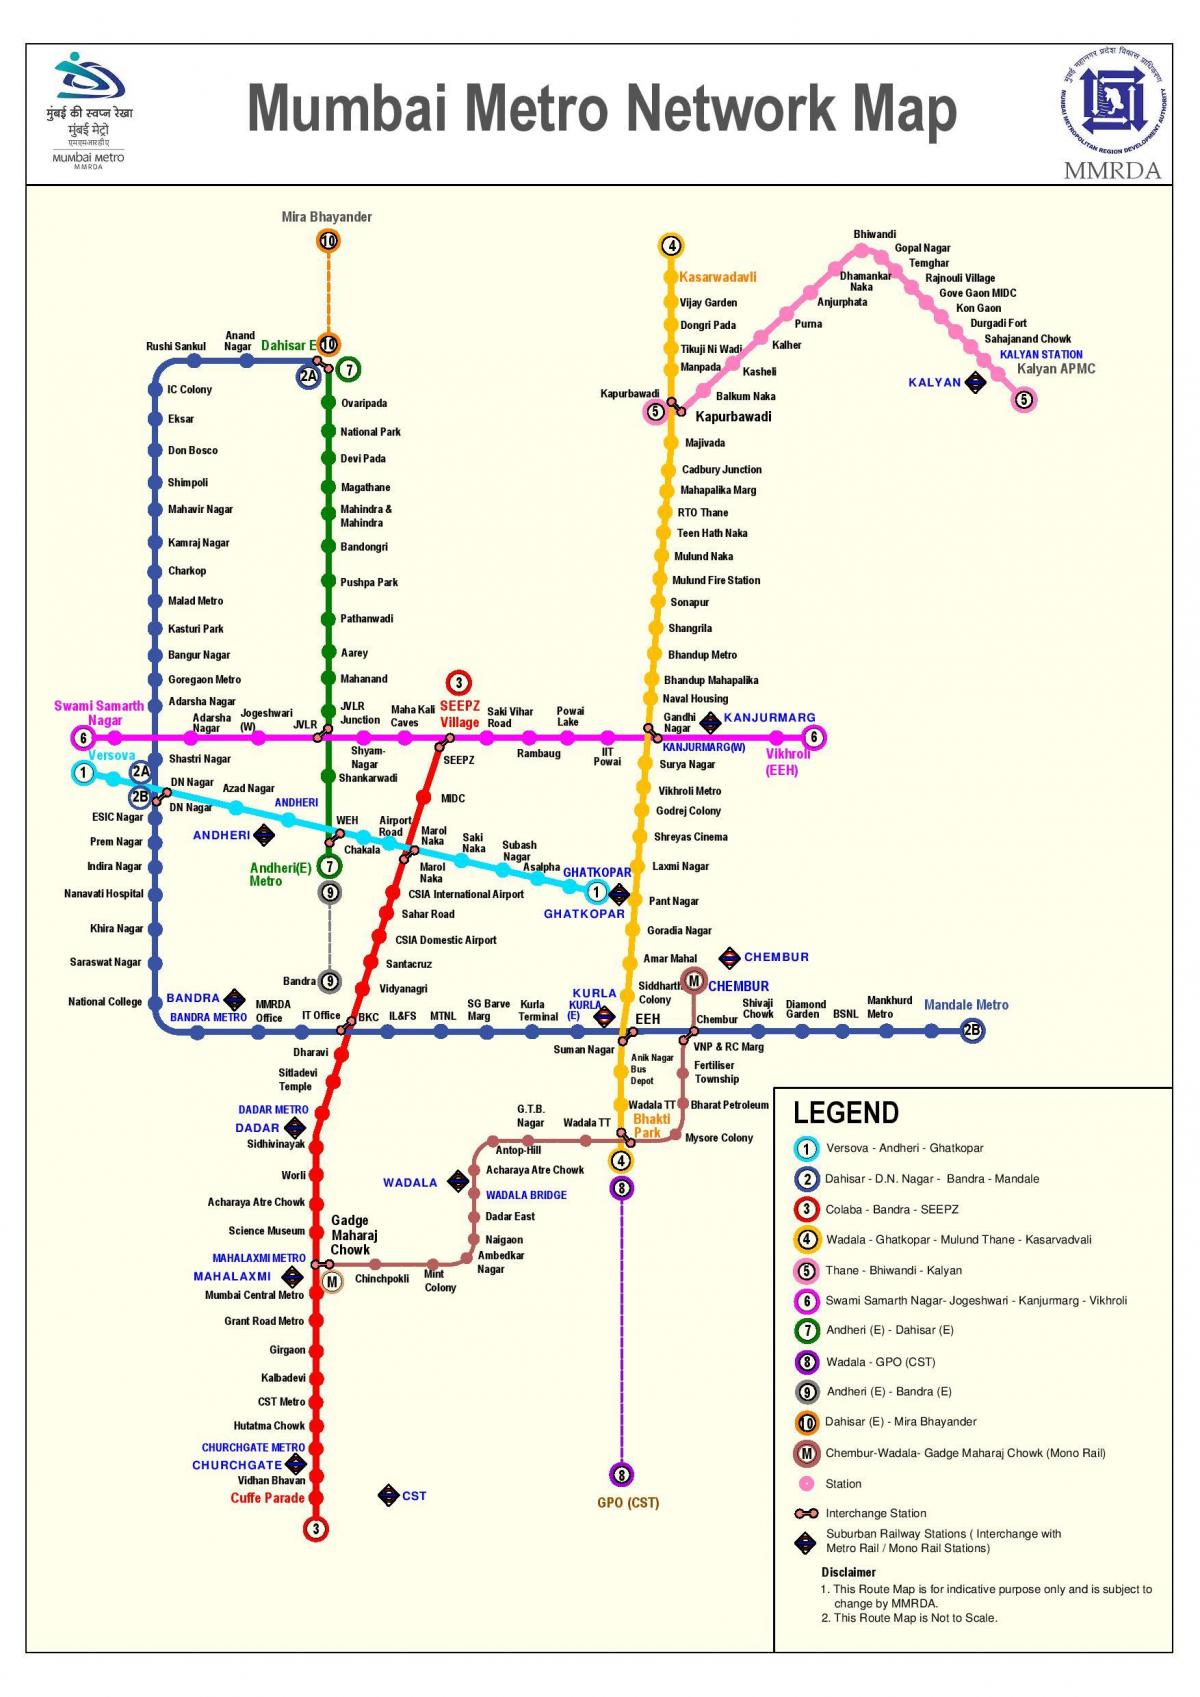 Мумбаи метро станция карте